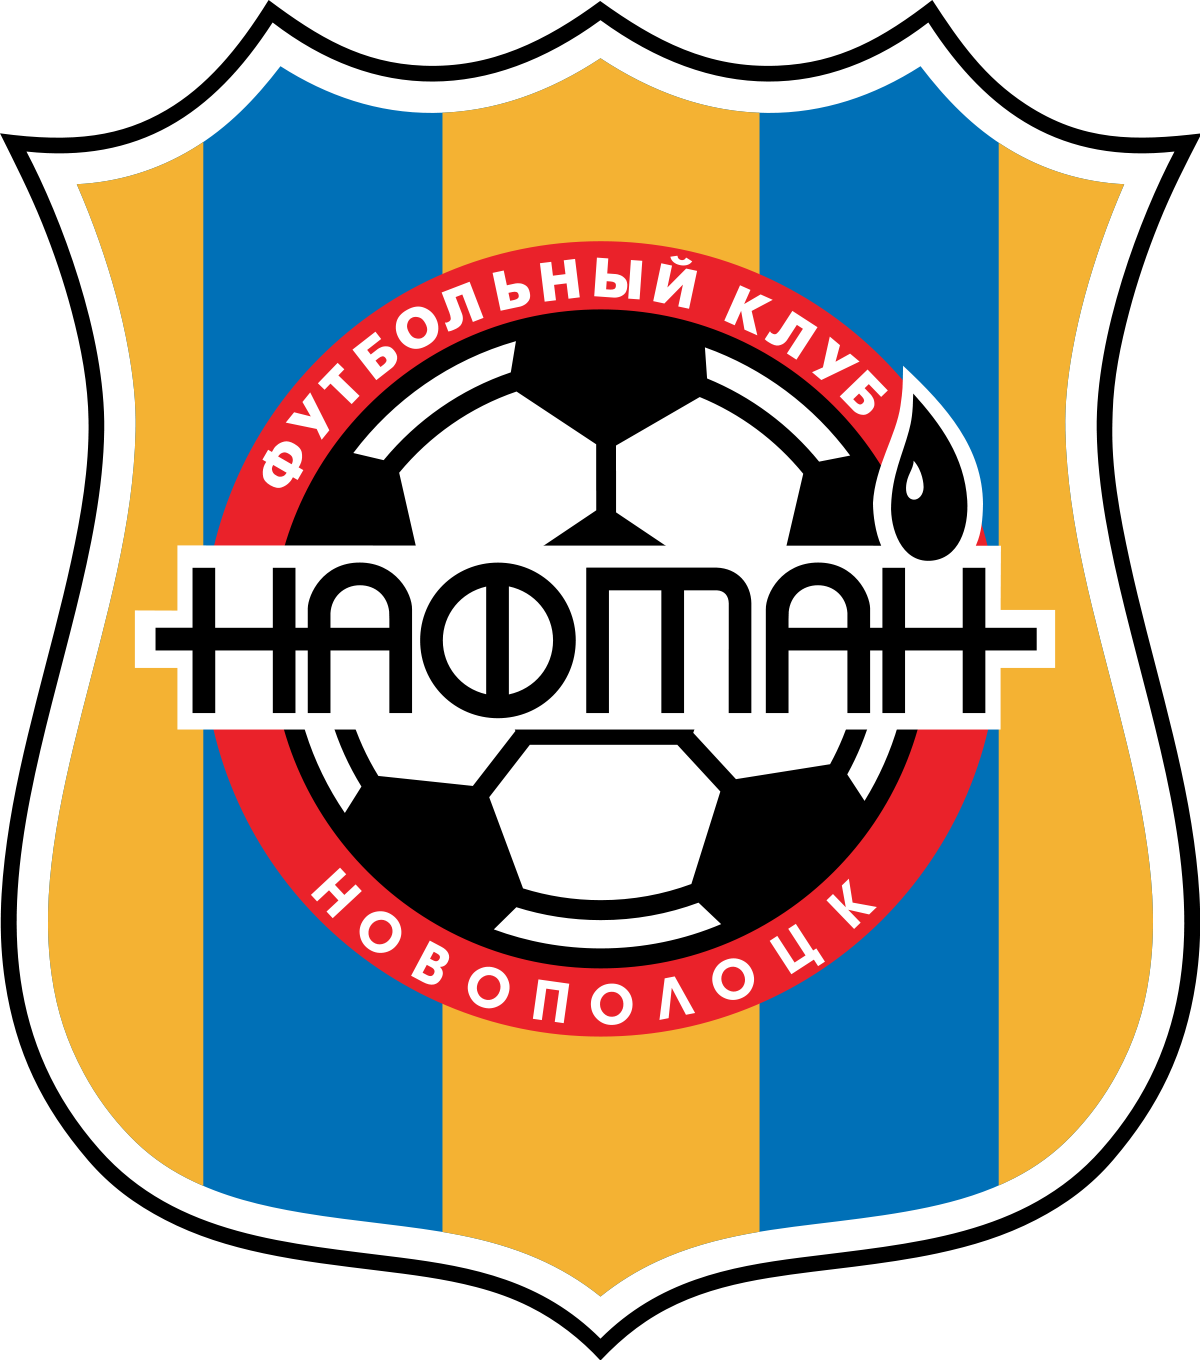 纳夫坦诺瓦洛克球队logo